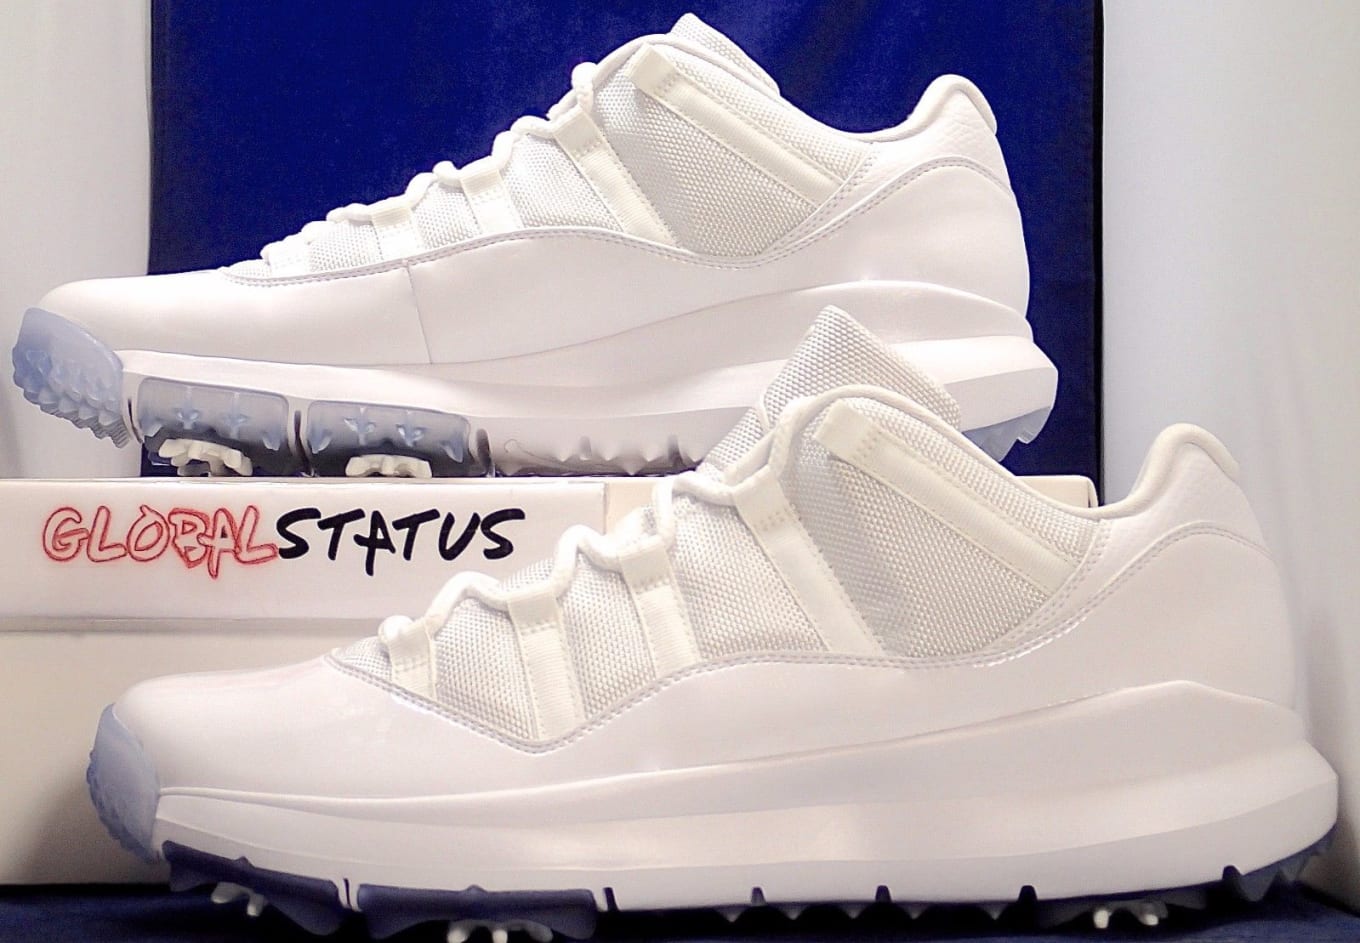 white jordan 11 golf shoes